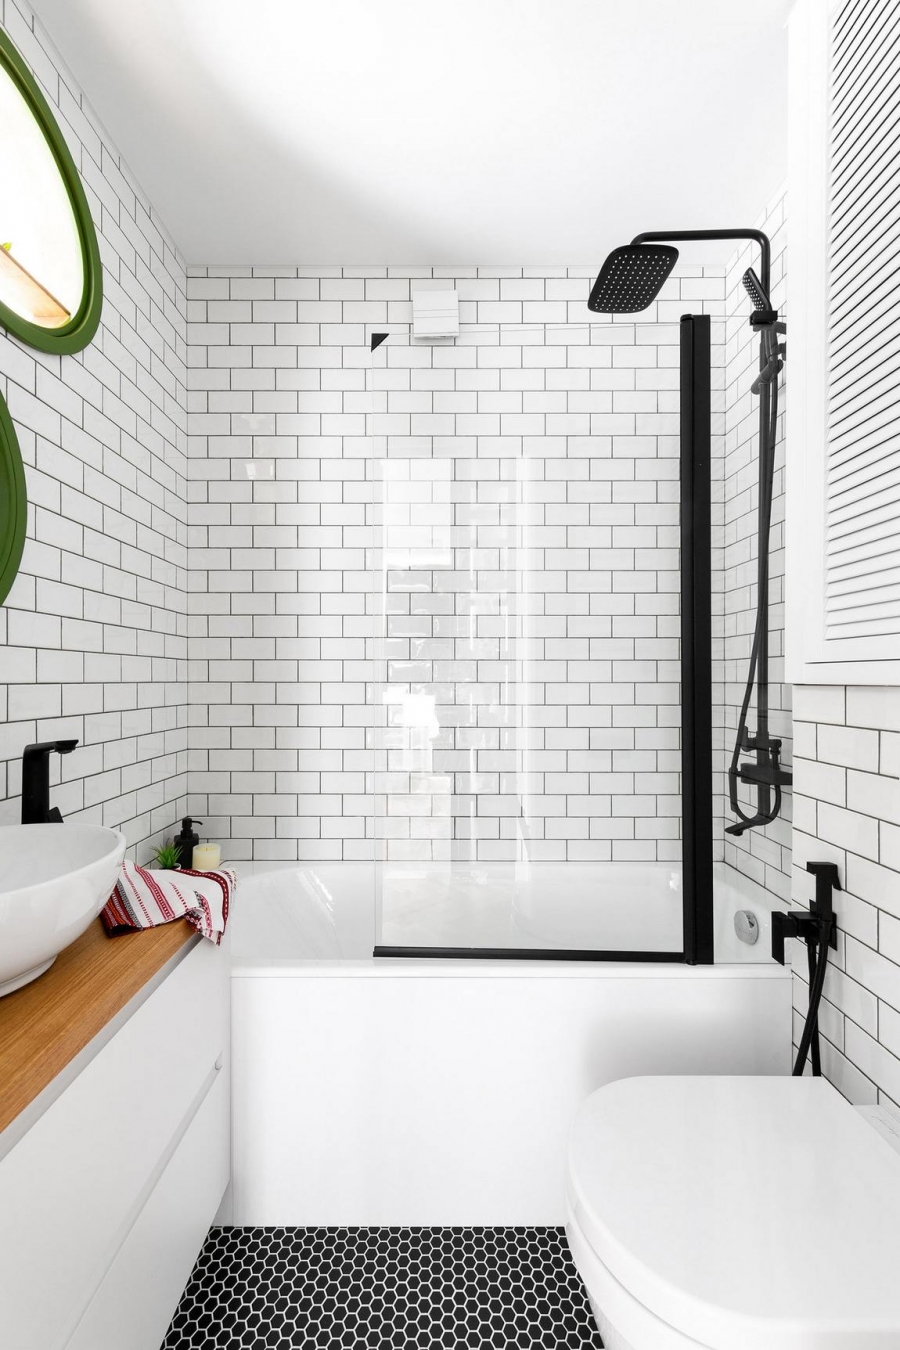 Sự kết hợp giữa gạch thẻ ốp tường màu trắng và gạch penny hình lục giác màu đen lát sàn cùng các chi tiết nội thất tạo sự tương phản đẹp mắt. Bồn tắm nằm phân vùng với toilet bằng cửa trượt kính hiện đại.